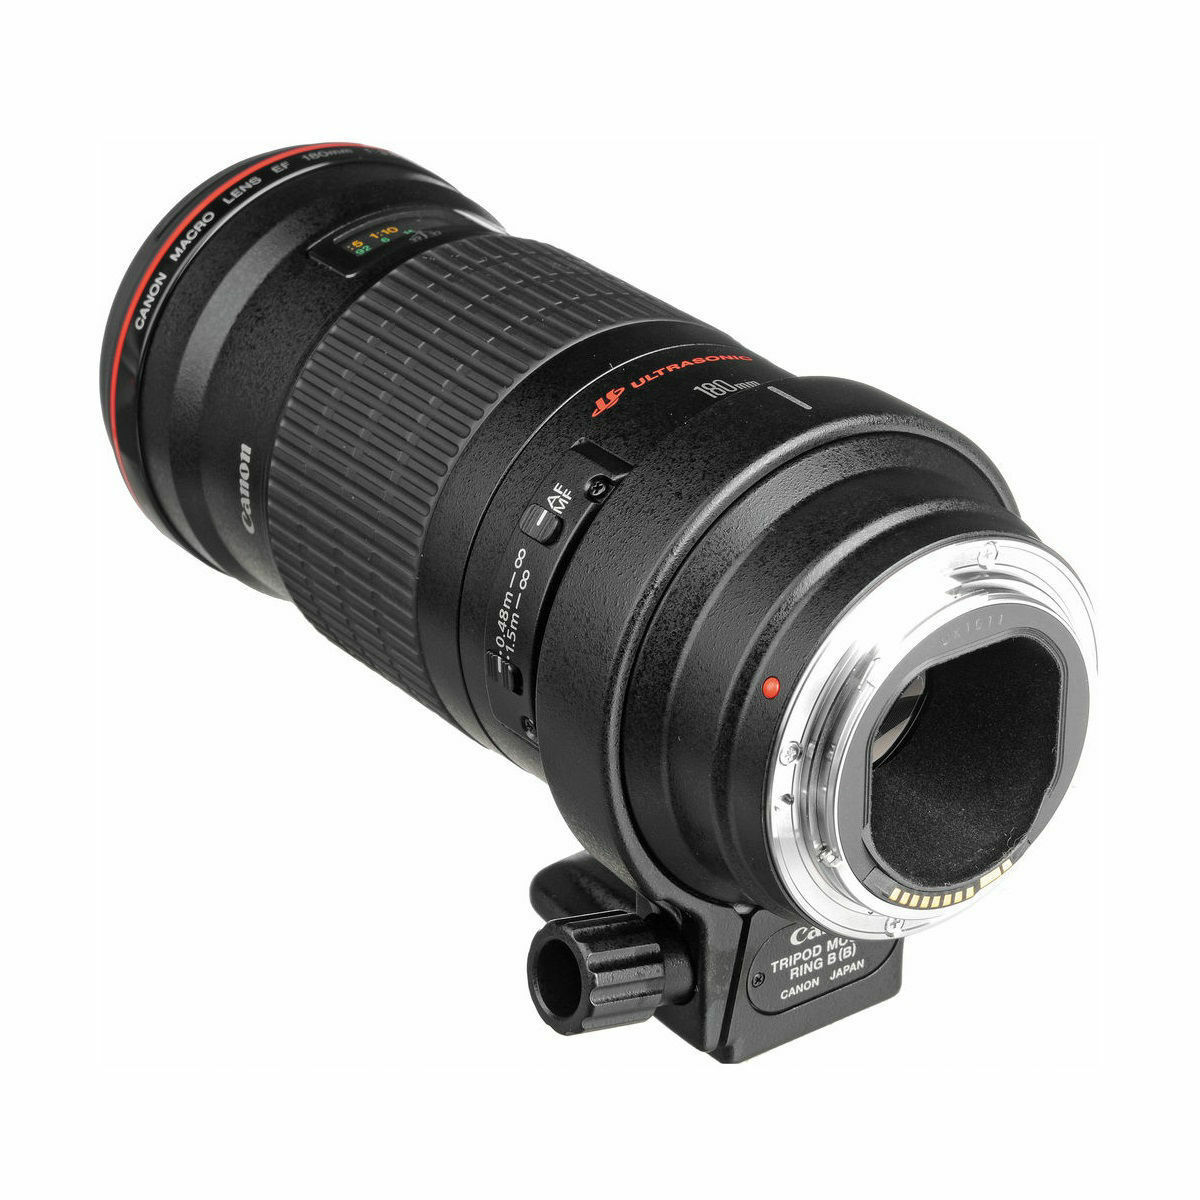 Canon 単焦点マクロレンズ EF180mm F3.5L マクロ USM - レンズ(単焦点)